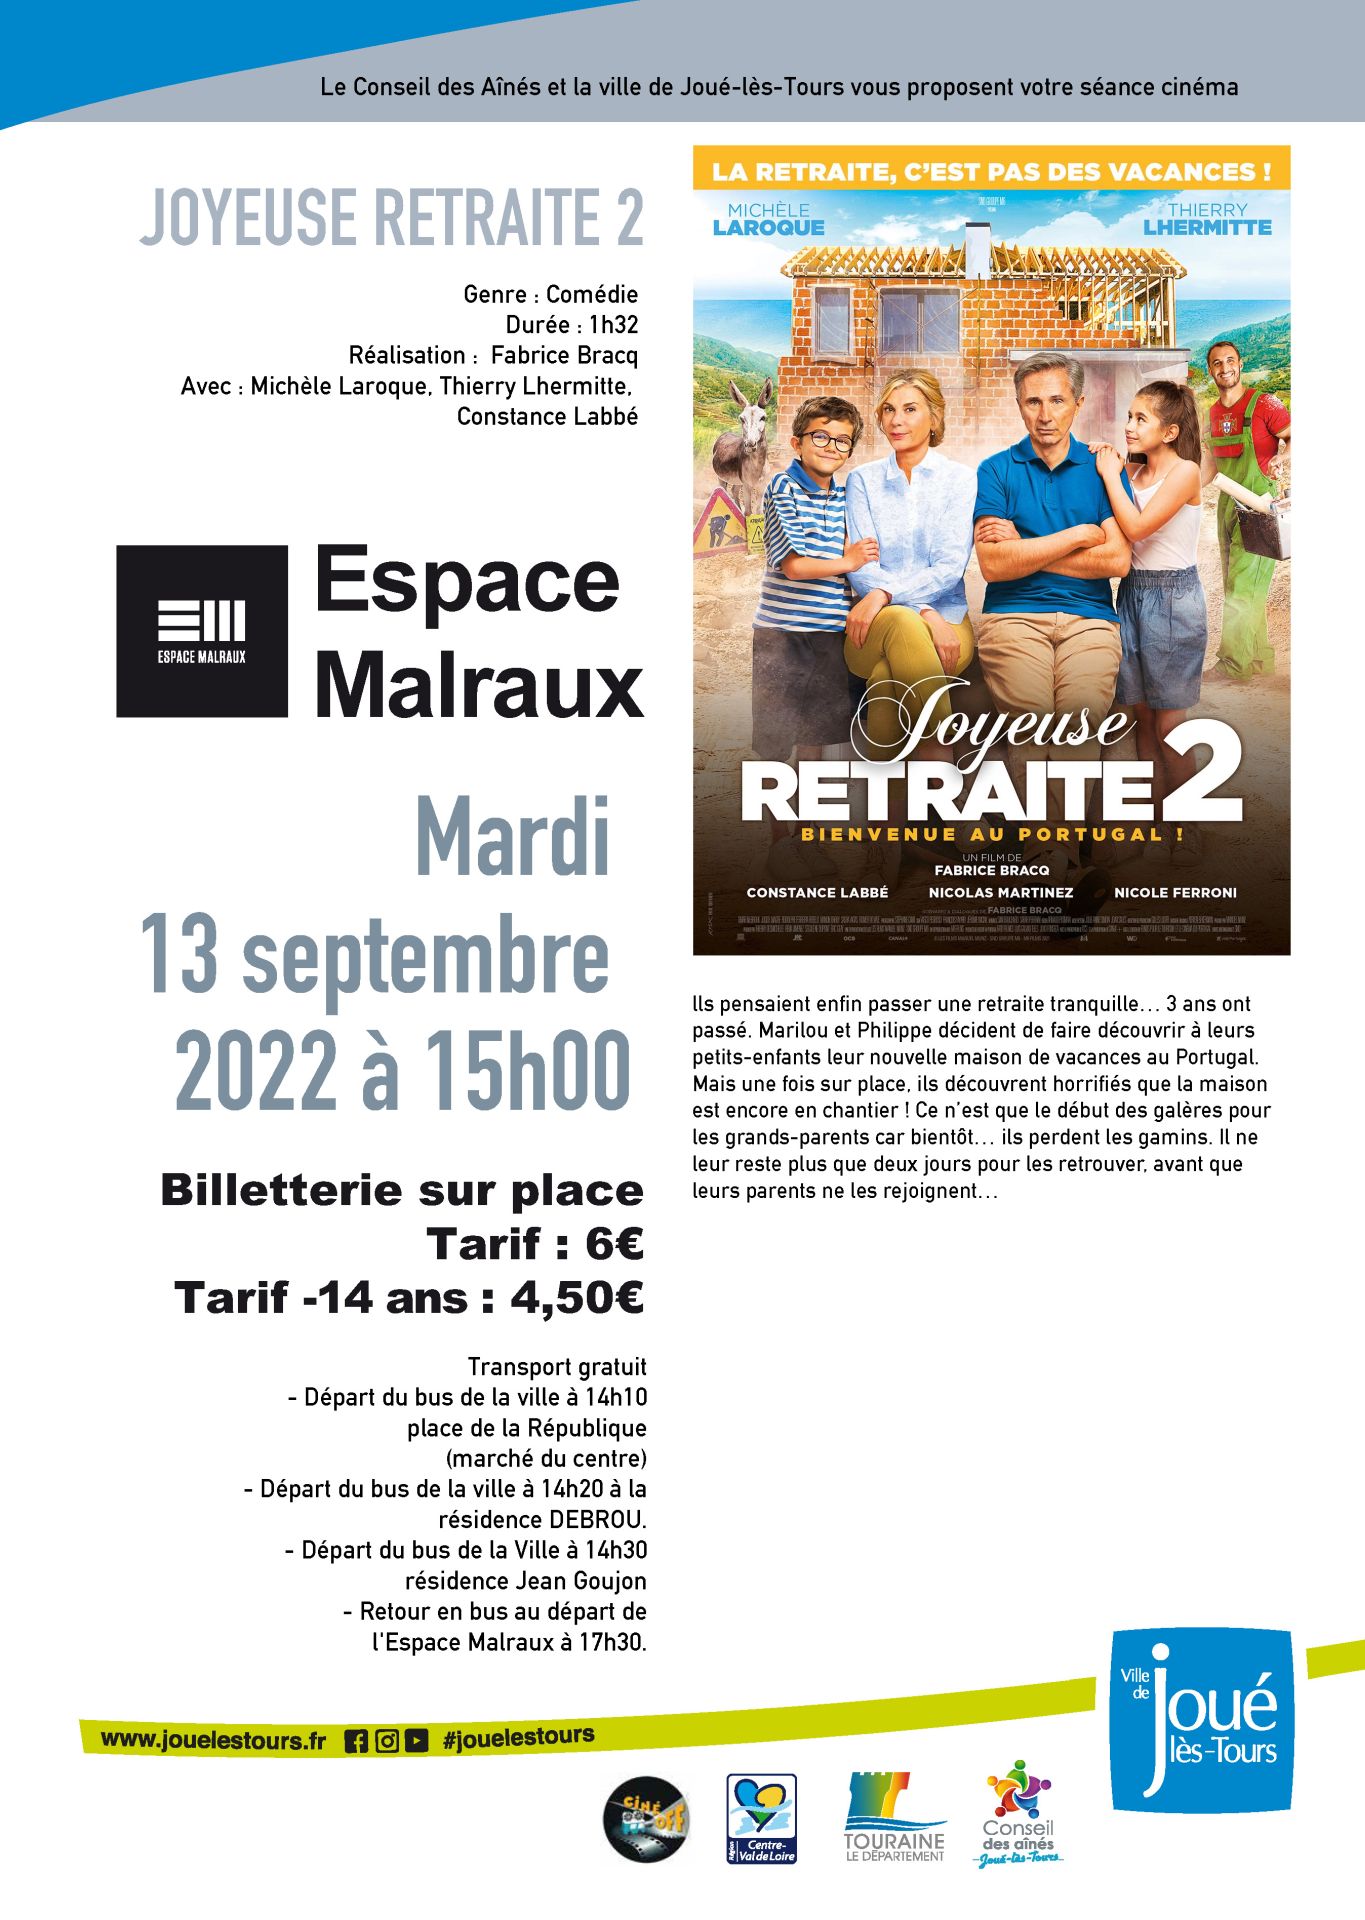 A3 CINEMA DES AINES - Joyeuse retraite 2 13 09 2022 ©Ville de Joué-lès-Tours